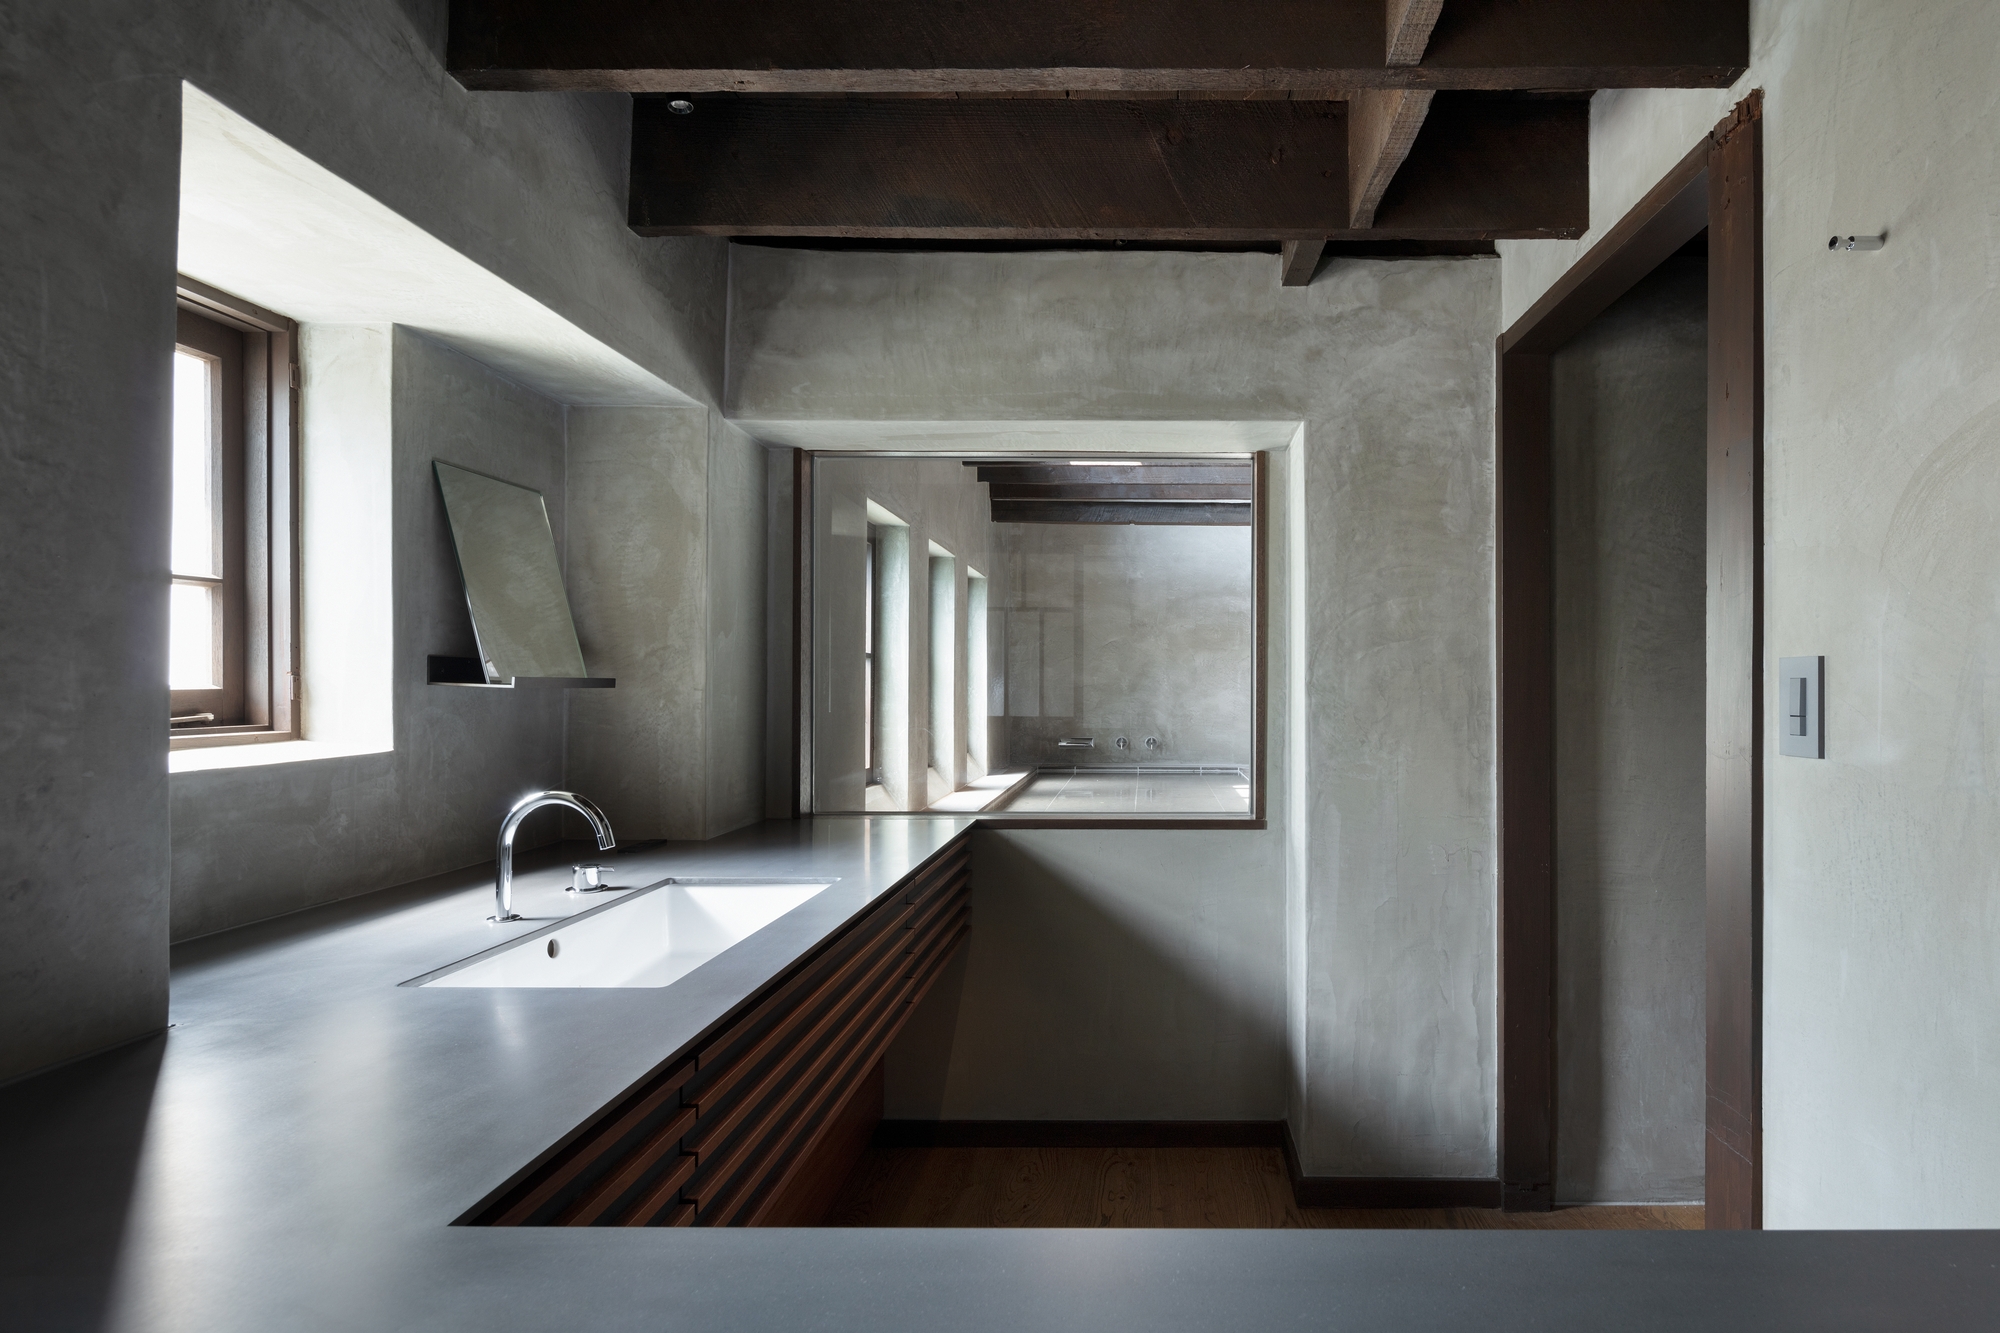 图片[13]|Hayama Kachitei酒店|ART-Arrakis | 建筑室内设计的创新与灵感